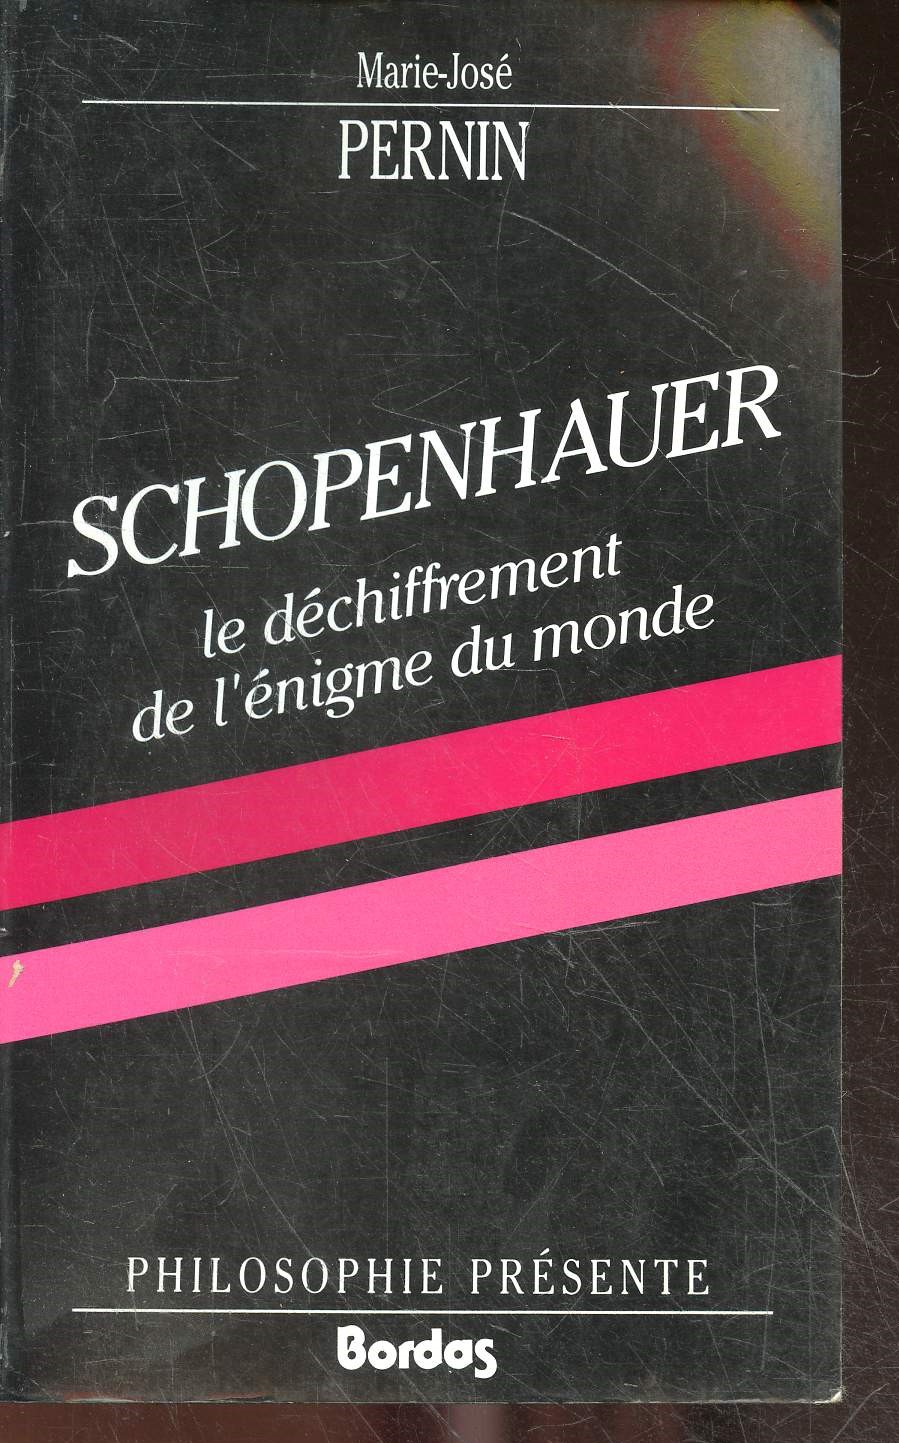 Schopenhauer le dechiffrement de l'enigme du monde